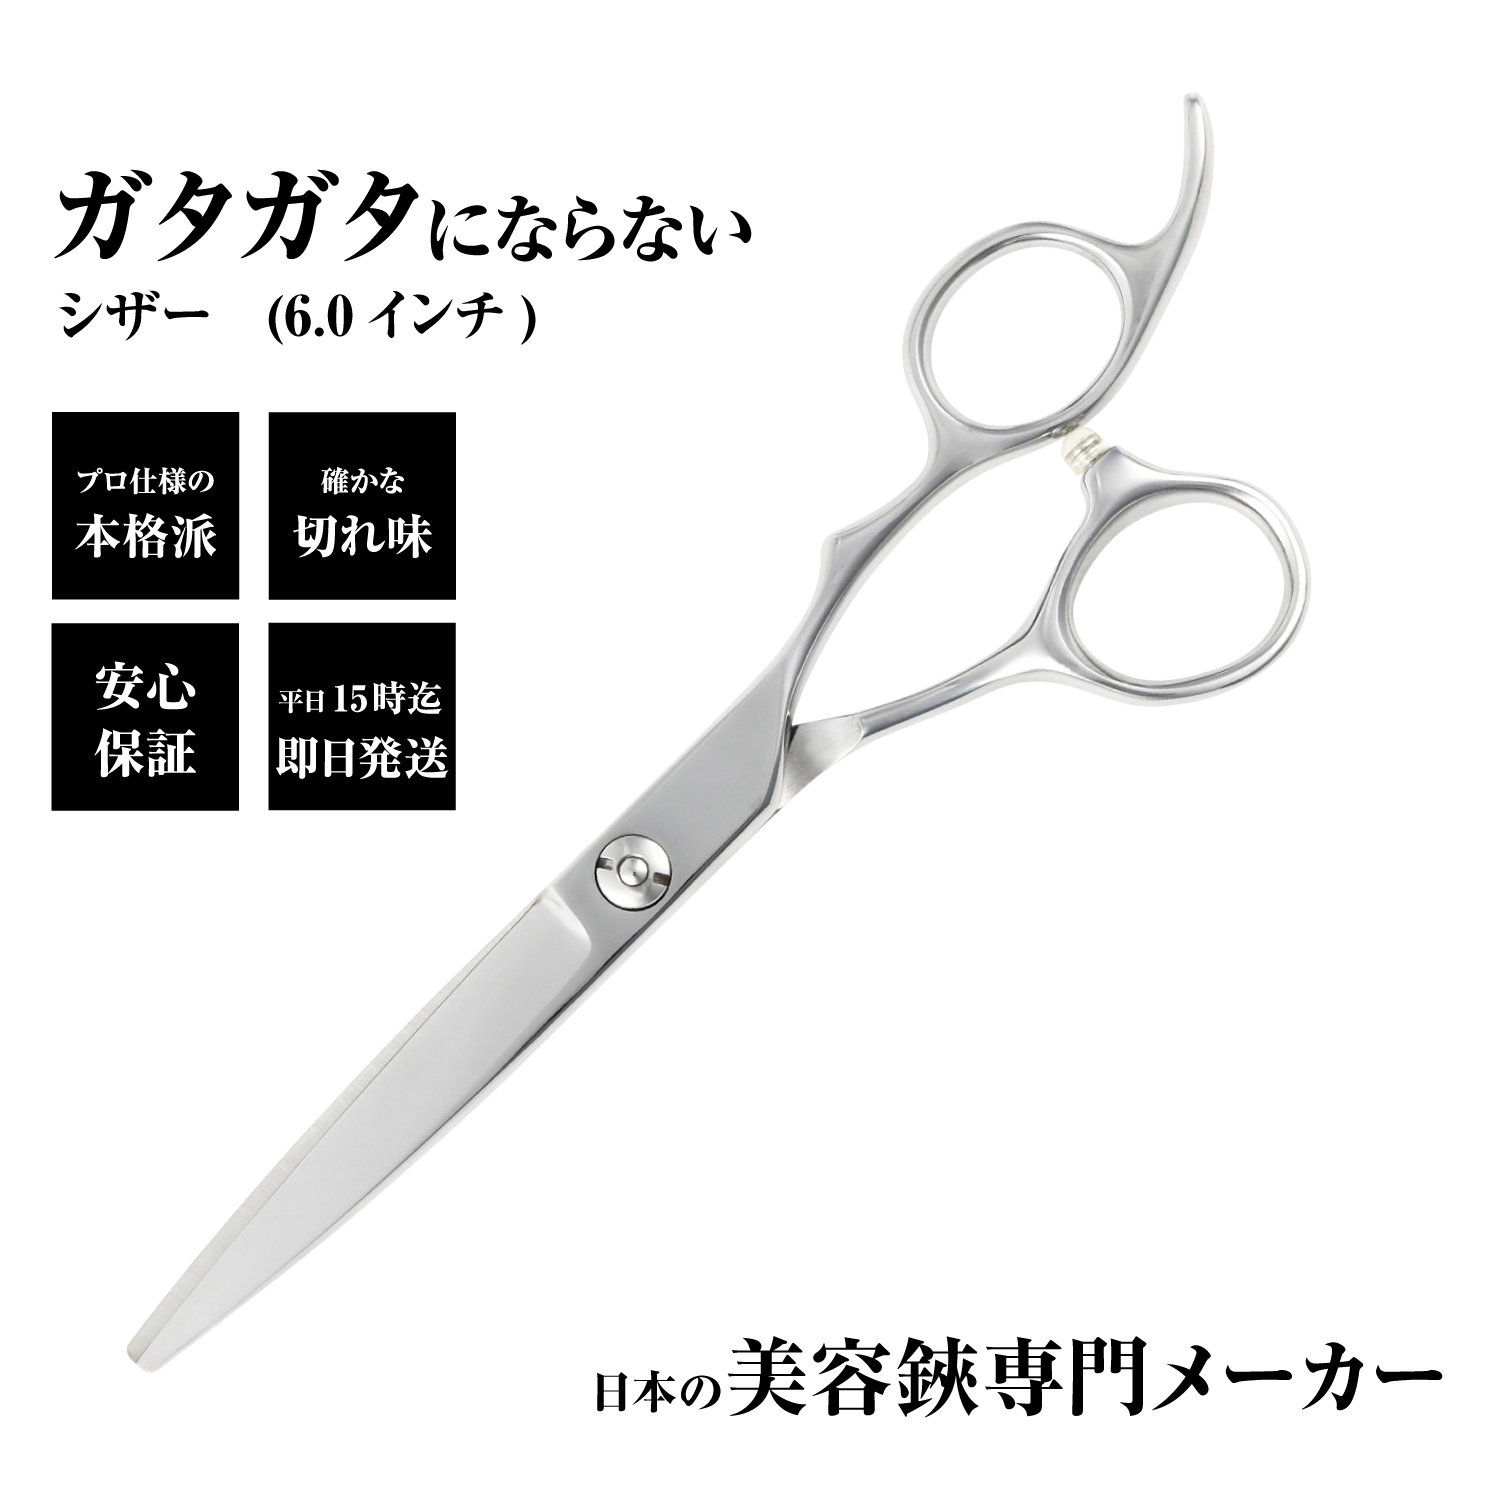 送料無料 美容師 散髪 はさみ シザー 日本の鋏専門メーカー サクサク切れる鋏 DEEDS DP-02 シザー 6.0インチ